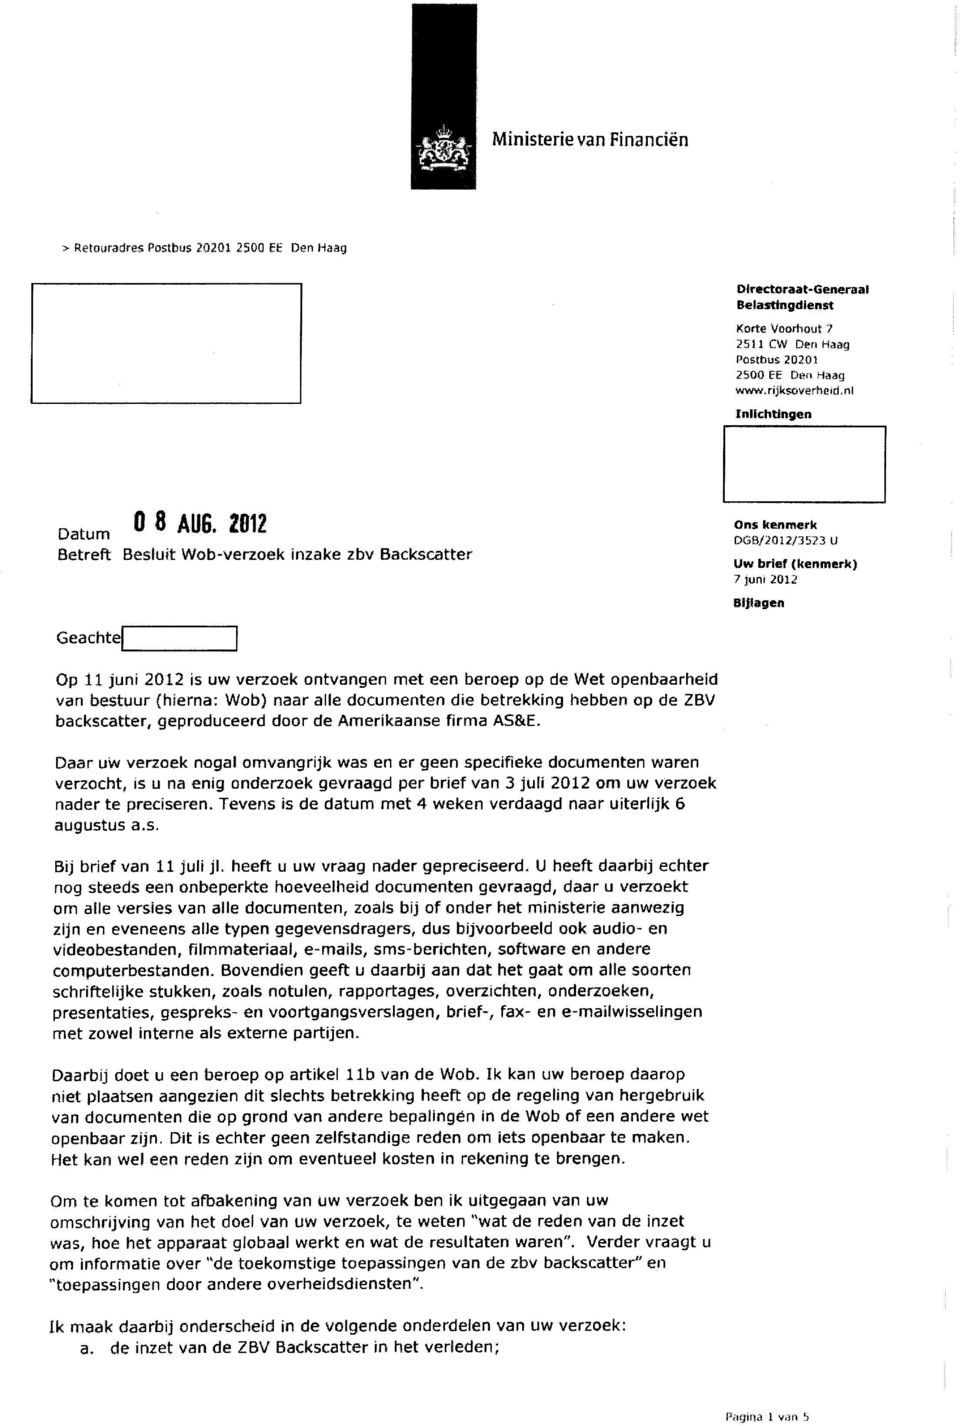 Op 11 juni 2012 is uw verzoek ontvangen met een beroep op de Wet openbaarheid van bestuur (hierna: Wob) naar alle documenten die betrekking hebben op de ZBV backscatter, geproduceerd door de